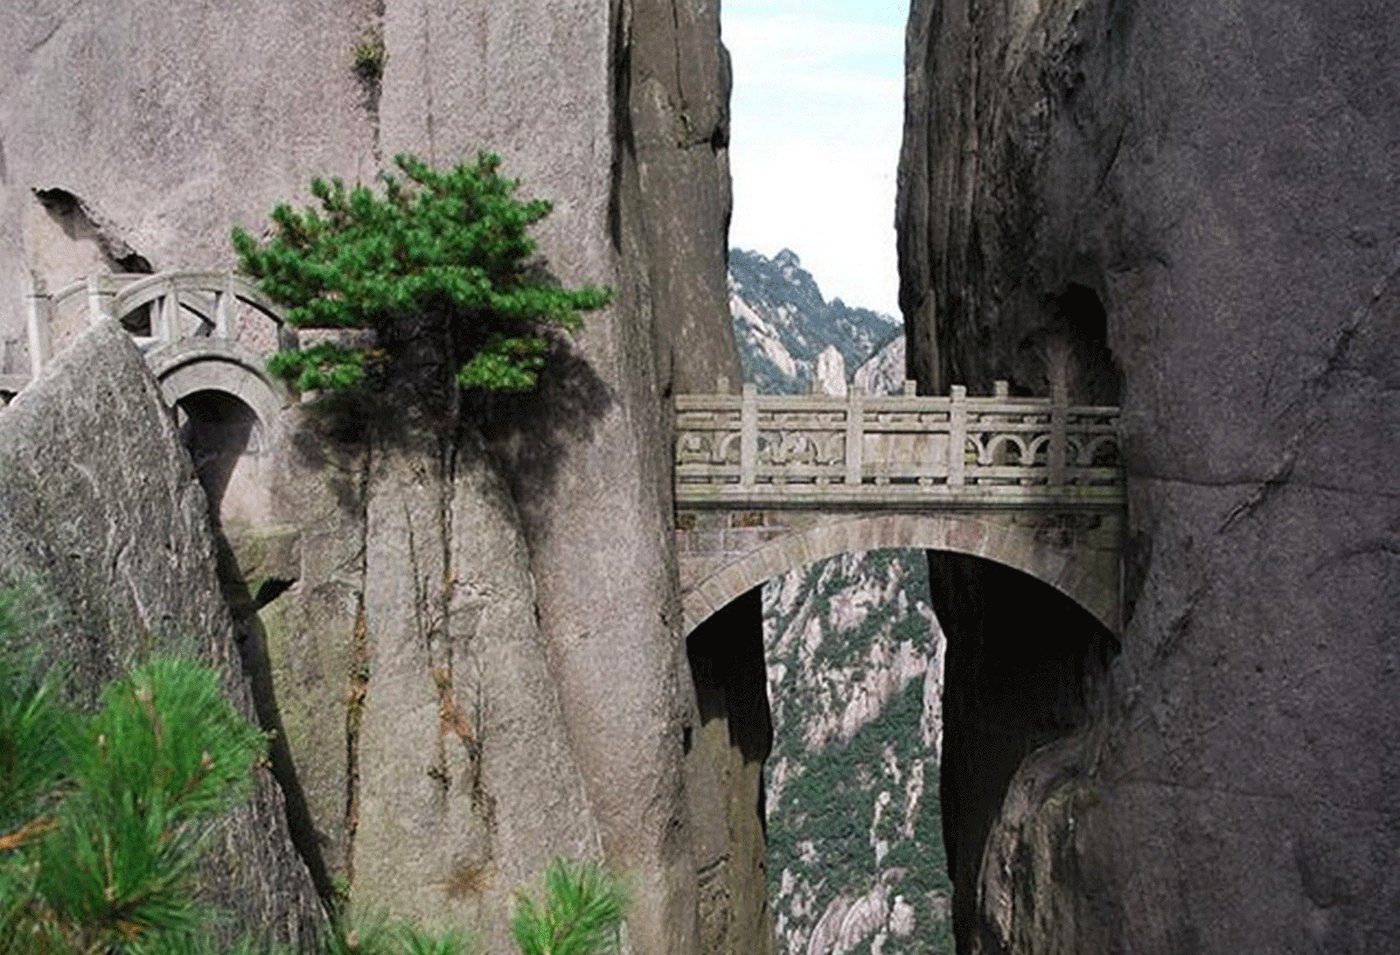 How to cross the bridge of immortal in Hangzhou